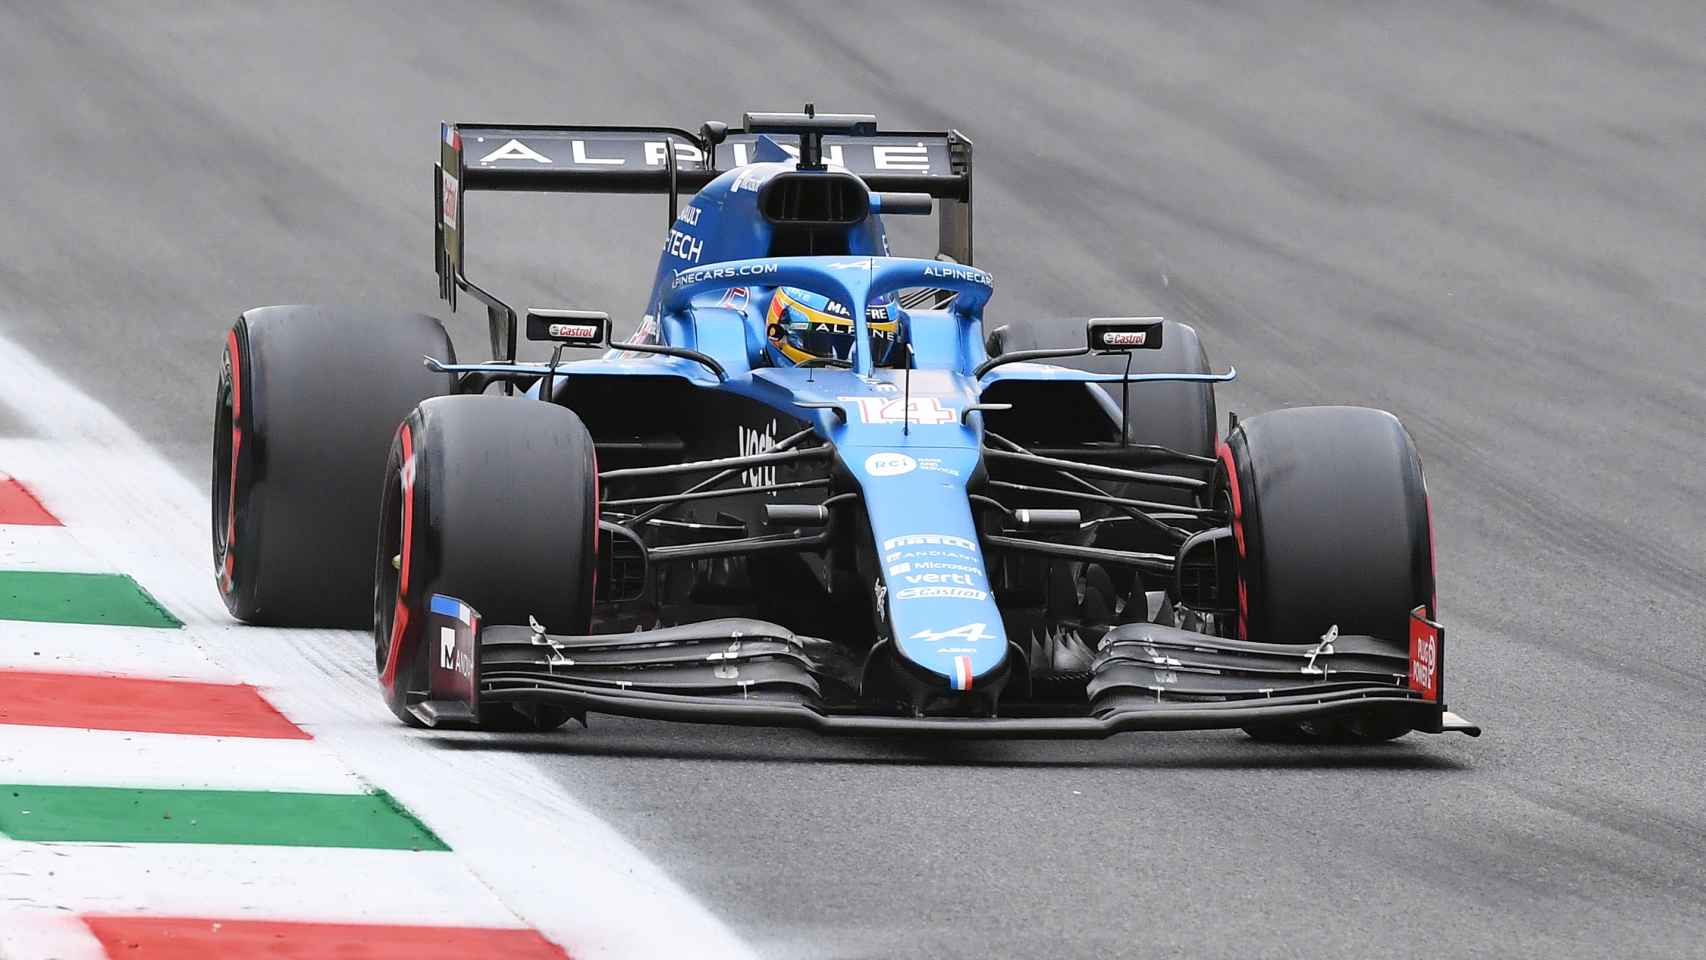 Fernando Alonso en el Gran Premio de Italia